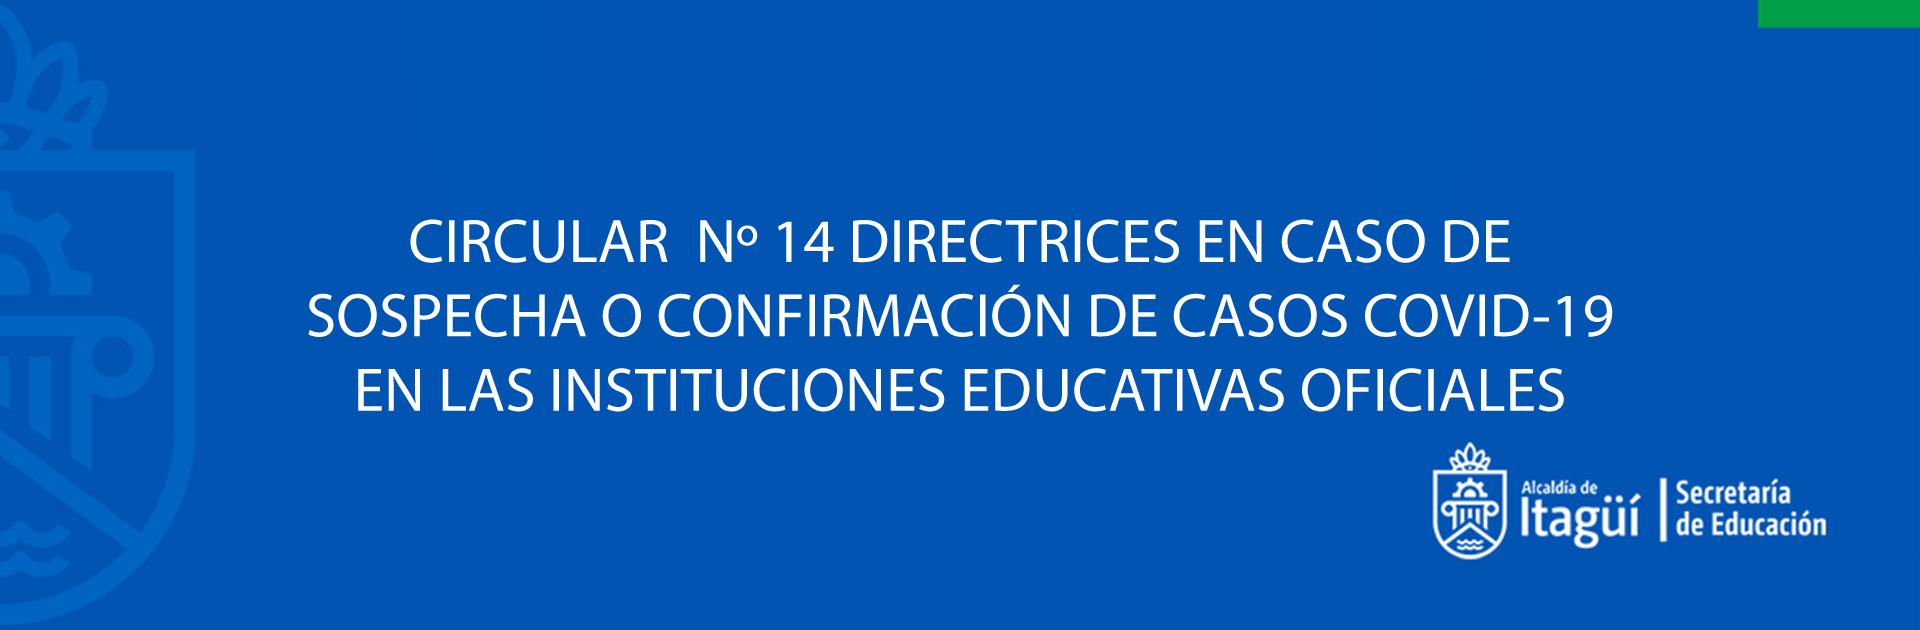 CIRCULAR  N 14 DIRECTRICES EN CASO DE SOSPECHA O CONFIRMACIÓN DE CASOS COVID-19 EN LAS INSTITUCIONES EDUCATIVAS OFICIALES